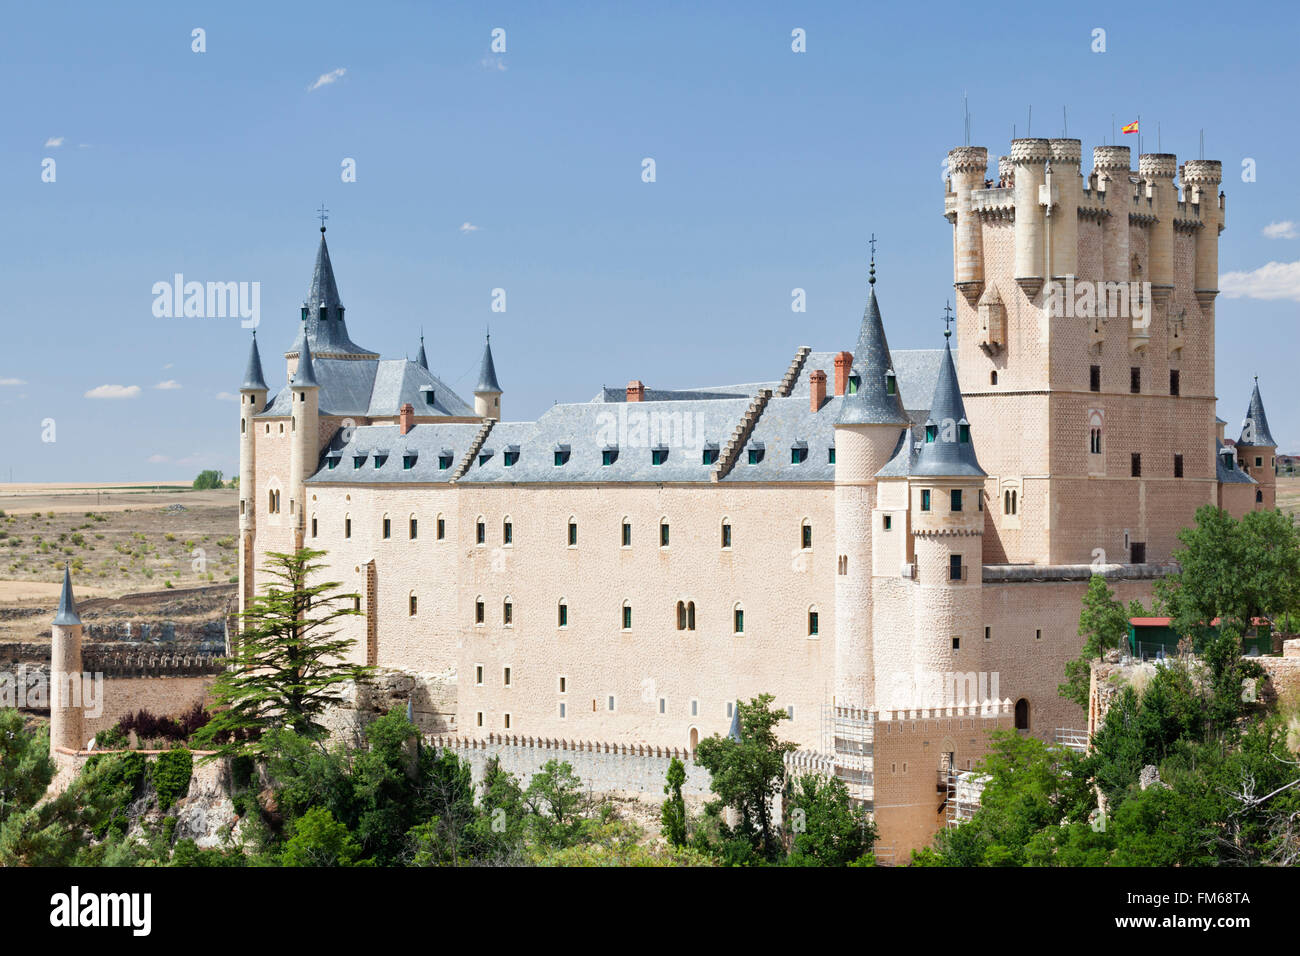 Une vue extérieure d'un grand château comme bâtiment appelé Alcazar de Ségovie, vu de loin, en Castilla y Leon, Espagne. Banque D'Images